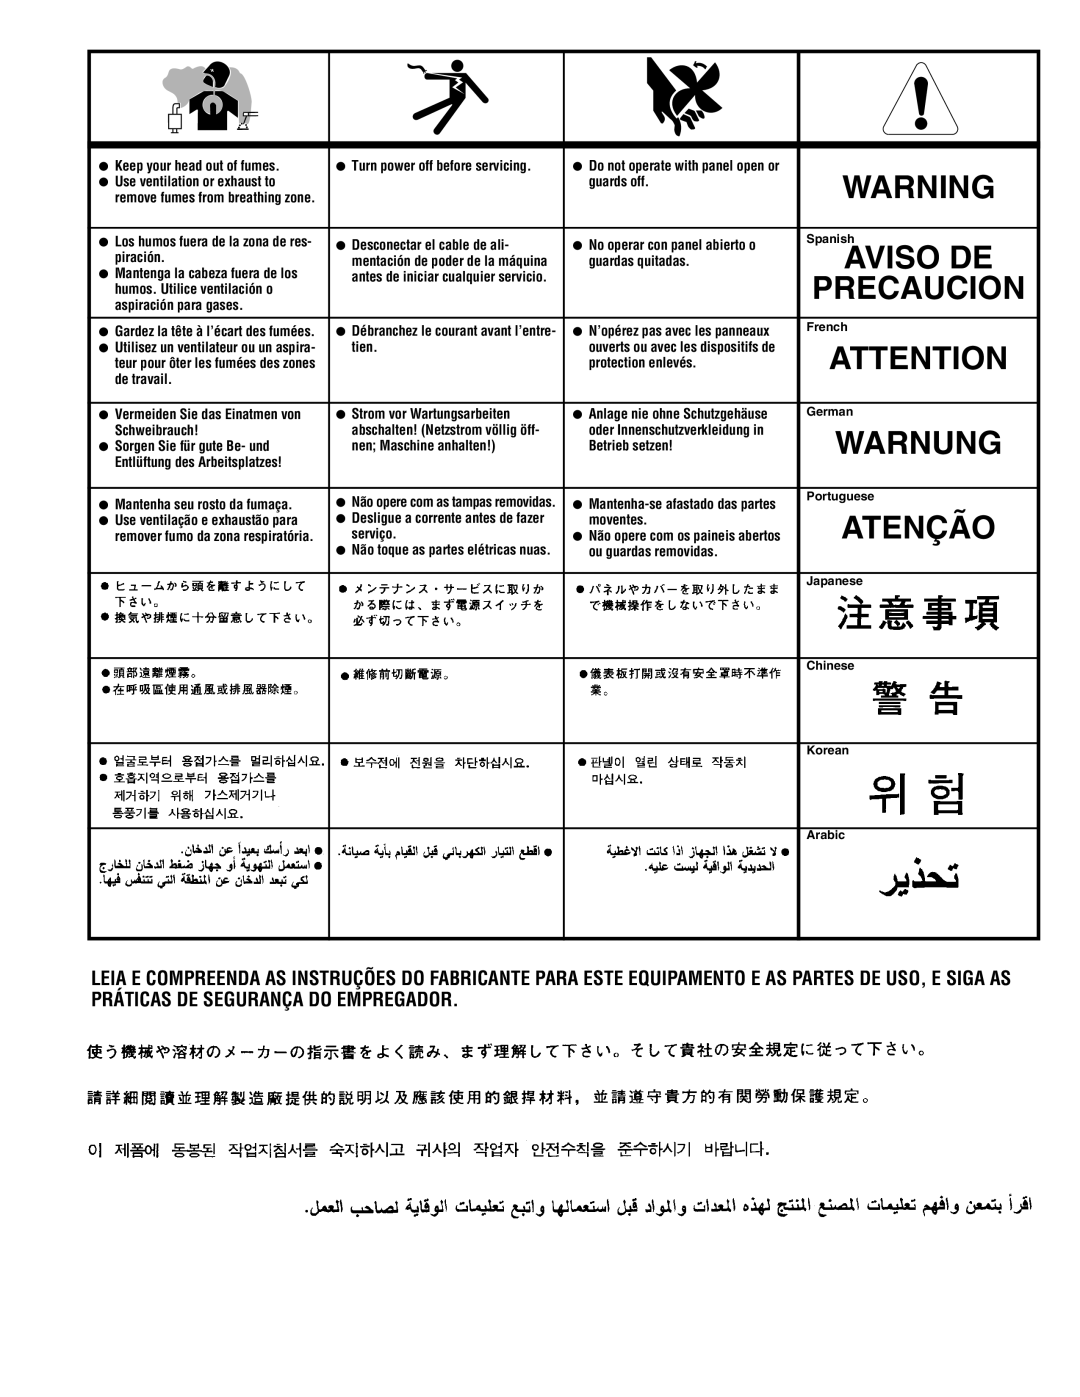 Lincoln POWER-ARC 4000 manual Warnung, Atenção, Precaucion, Aviso De, Keep your head out of fumes 